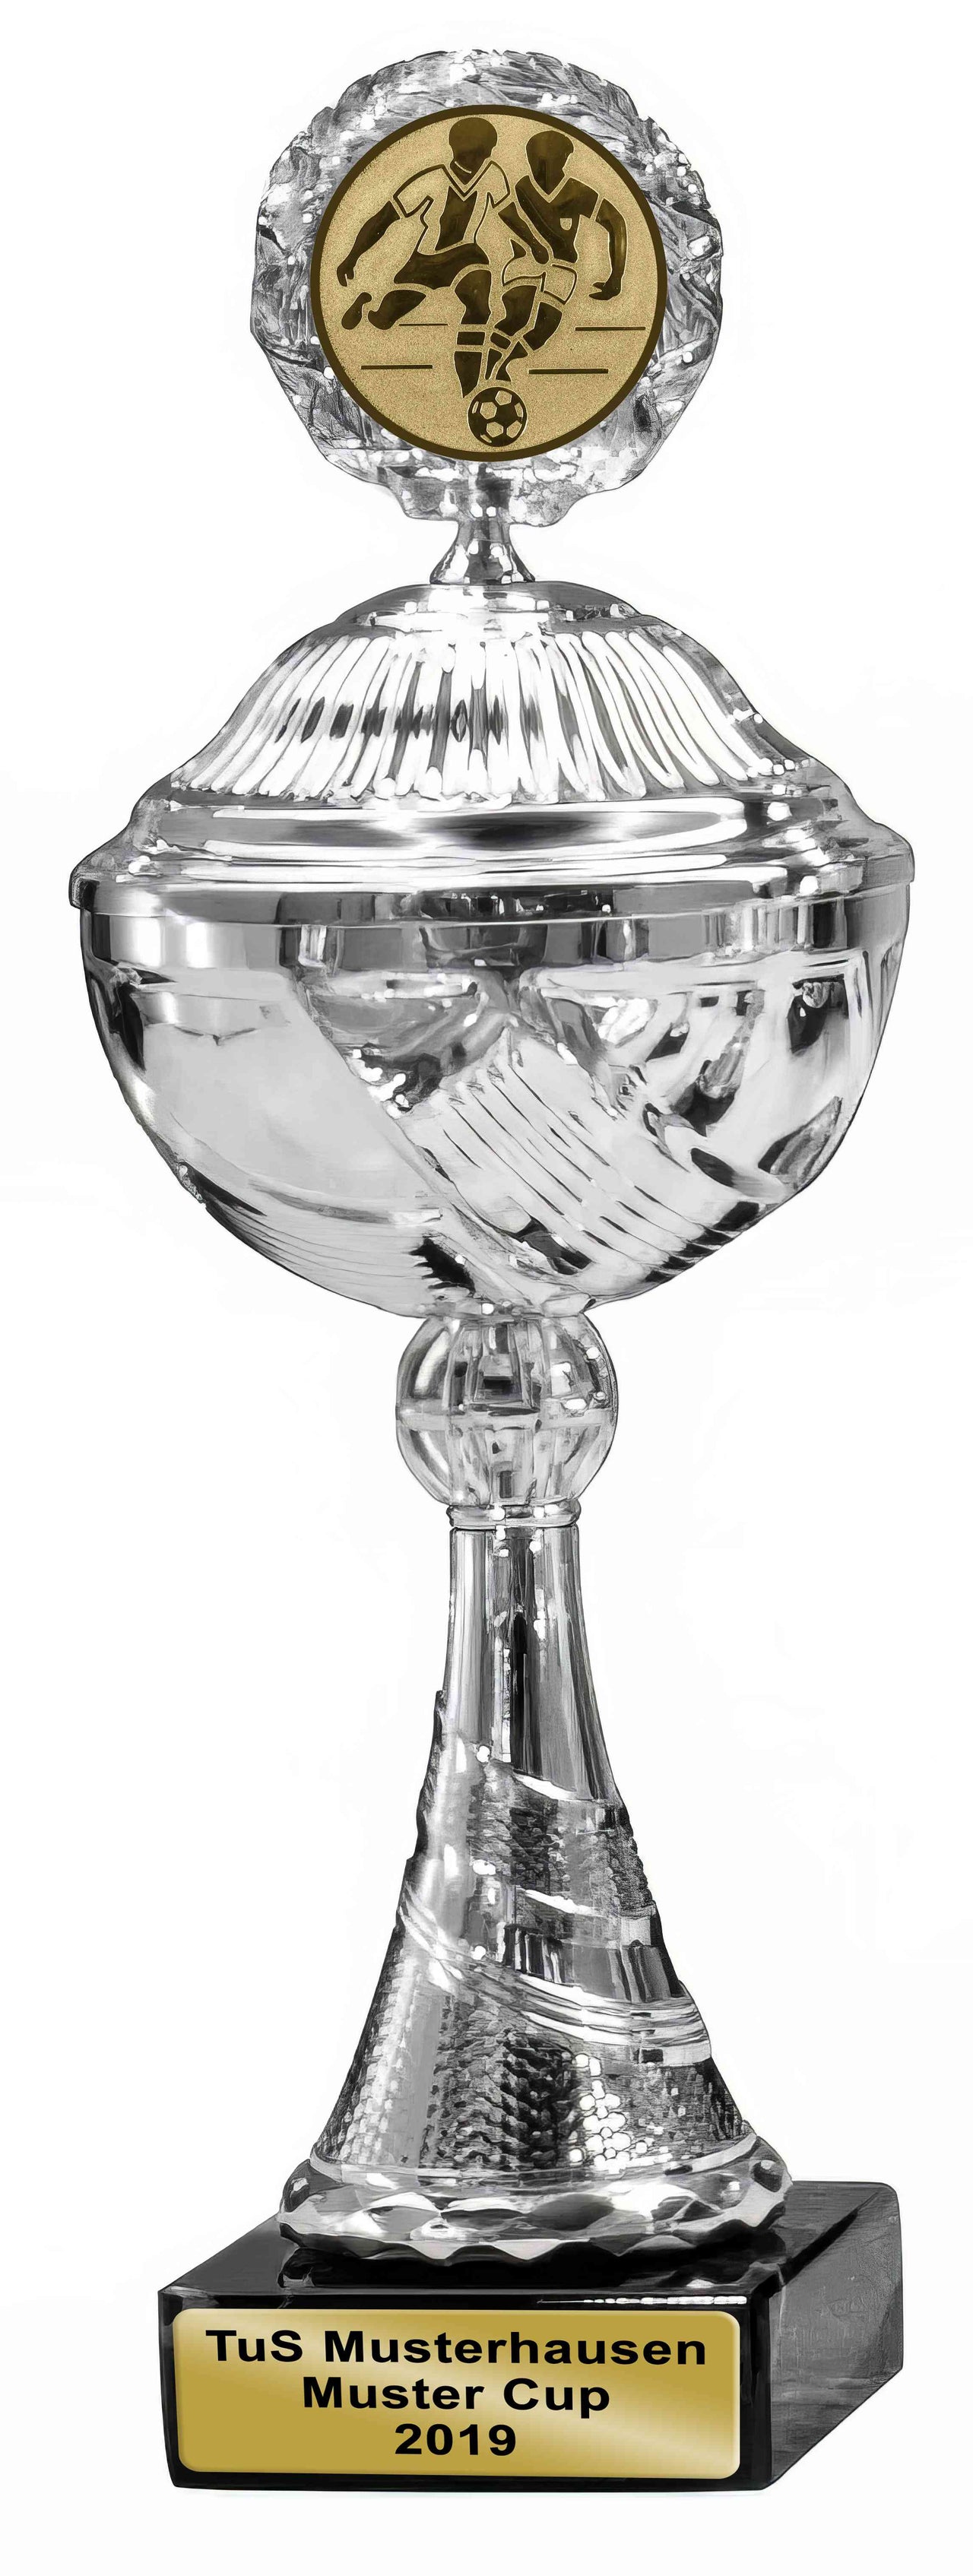 Ein Pokal Erfurt 3-er Pokalserie 253 mm - 272 mm PK759360-3-E50 mit rundem Sockel, der als Auszeichnung dient.